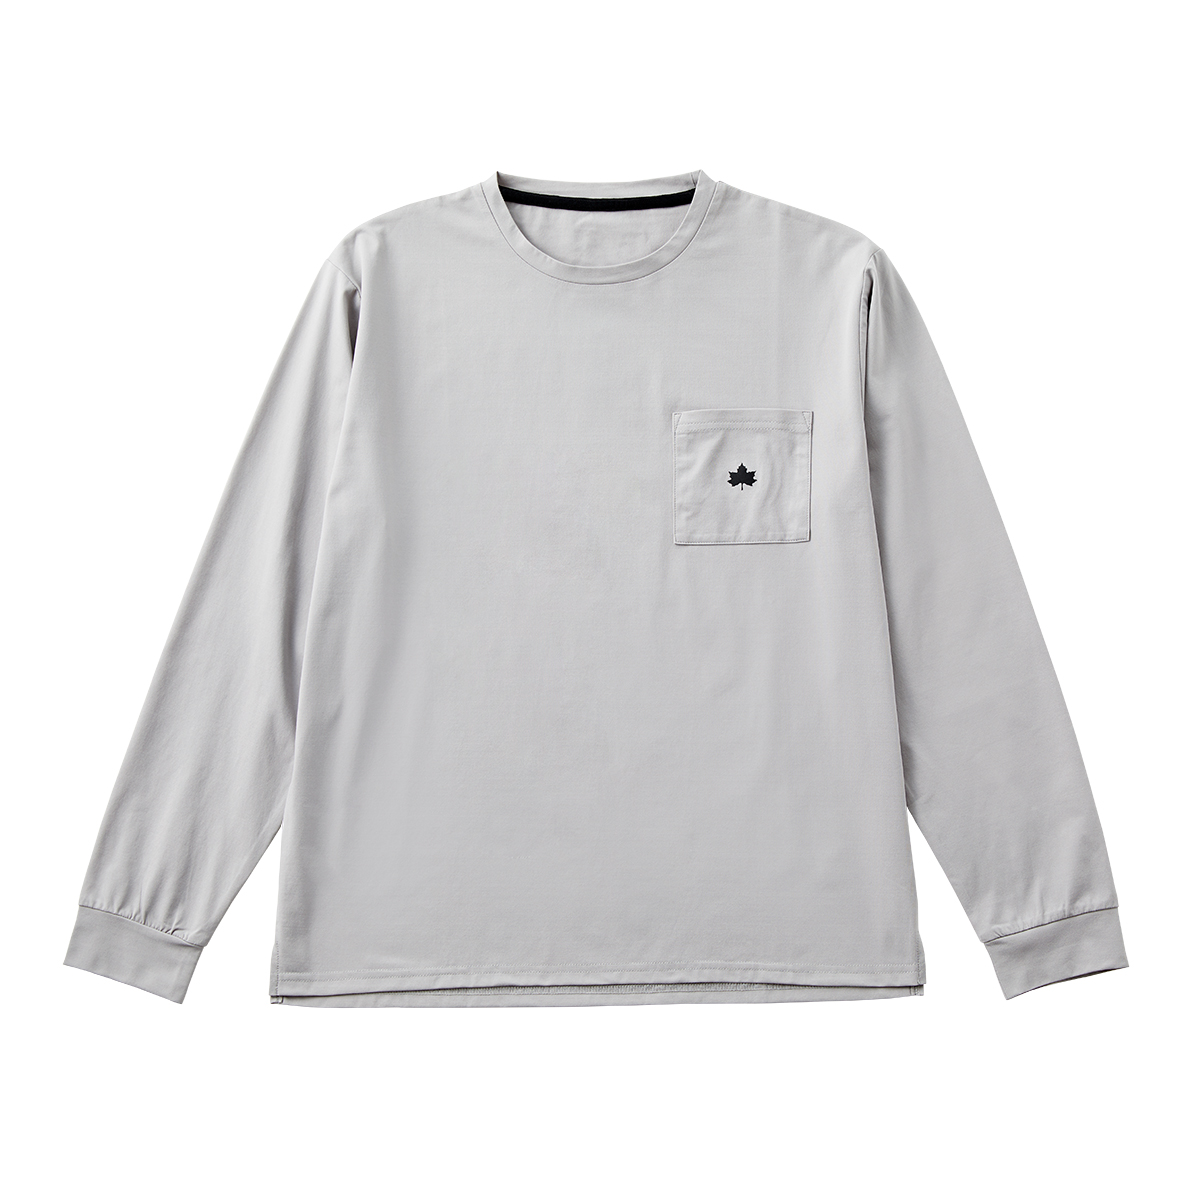 ■LOGOS by Lipner ラウンジロングTシャツ 59207（グレー・M）